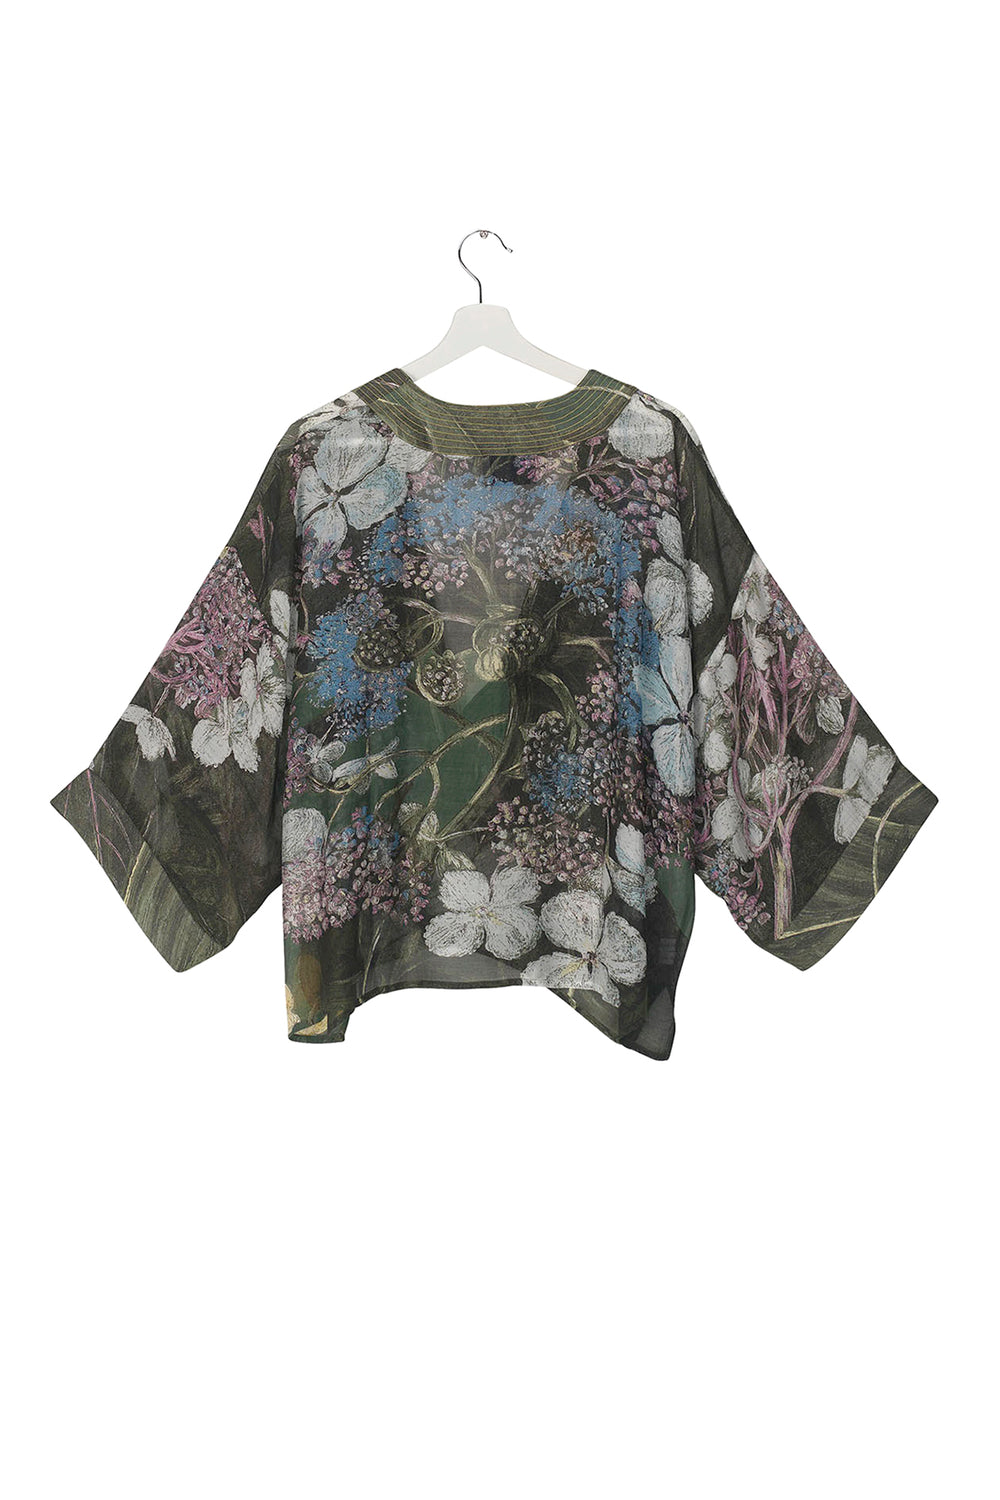 KEW Hydrangea Forest Kimono – One Hundred Stars